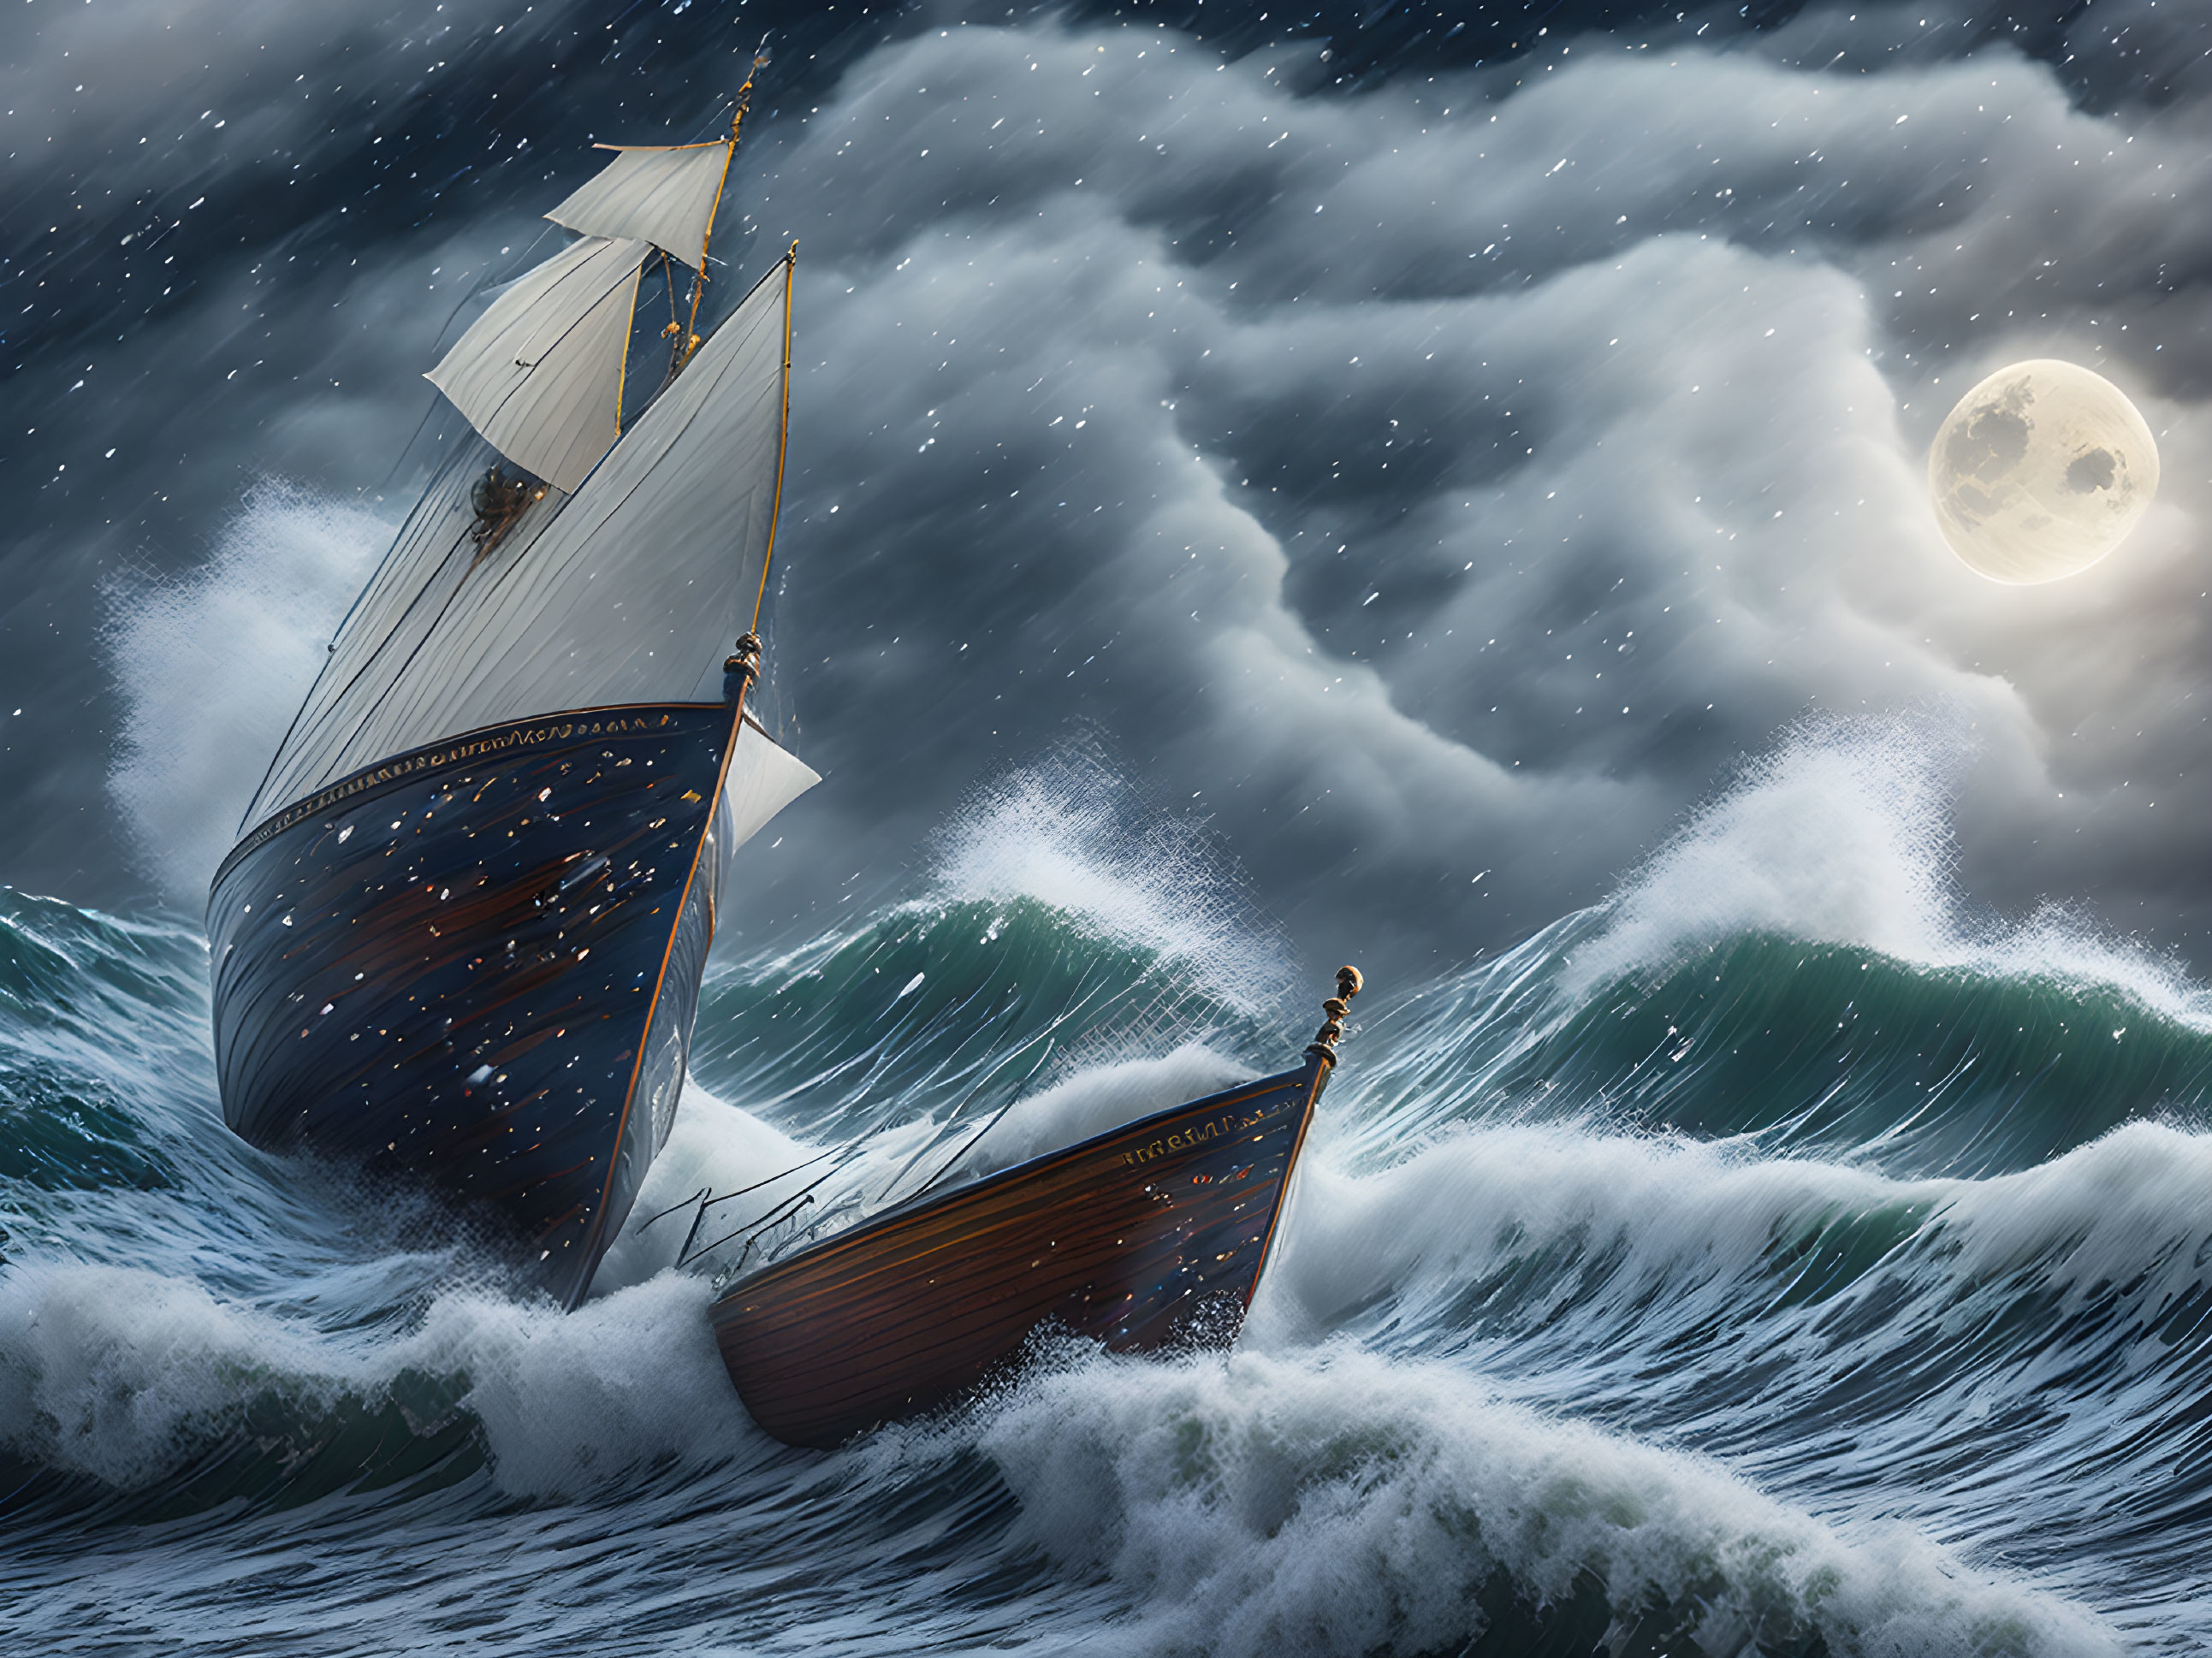 Moonlit Voyage: Stormy Seas